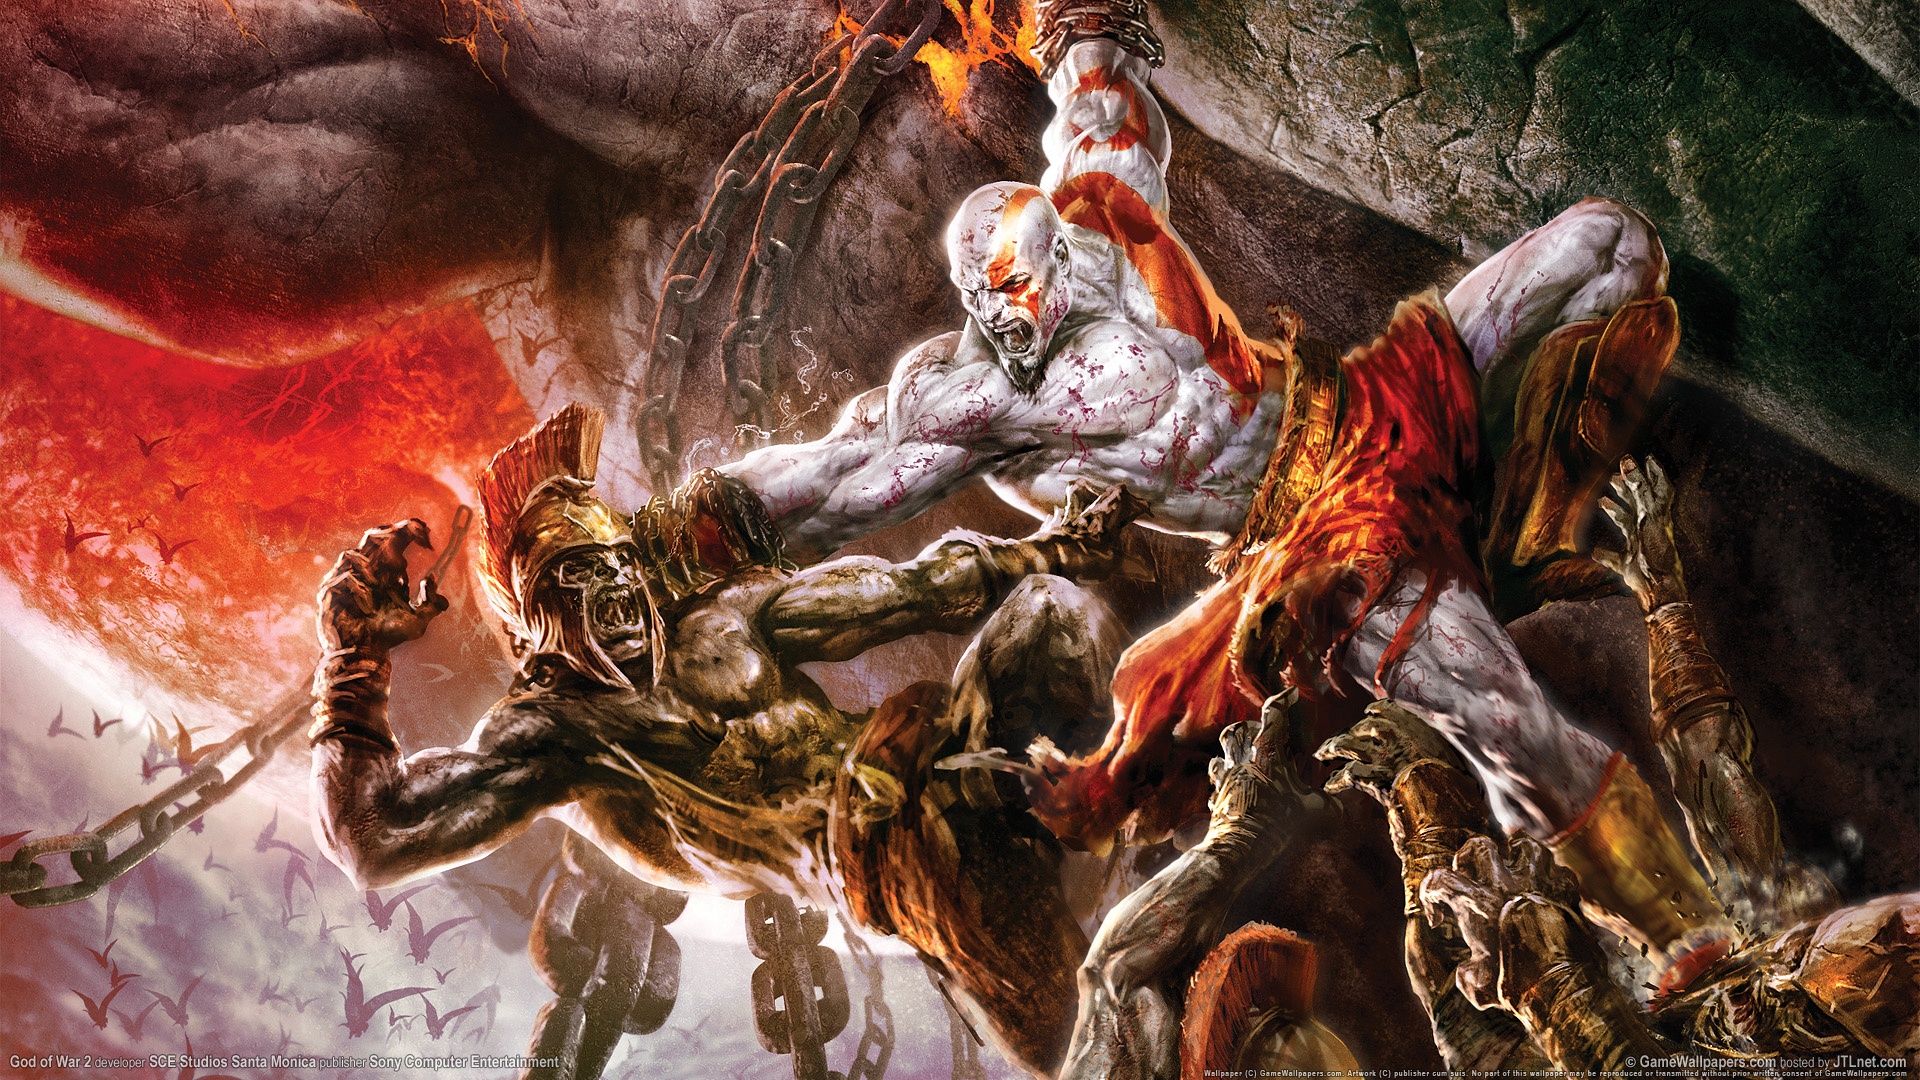 Foto (Reprodução): God of War foi uma das séries clássicas que surgiram no PS2.